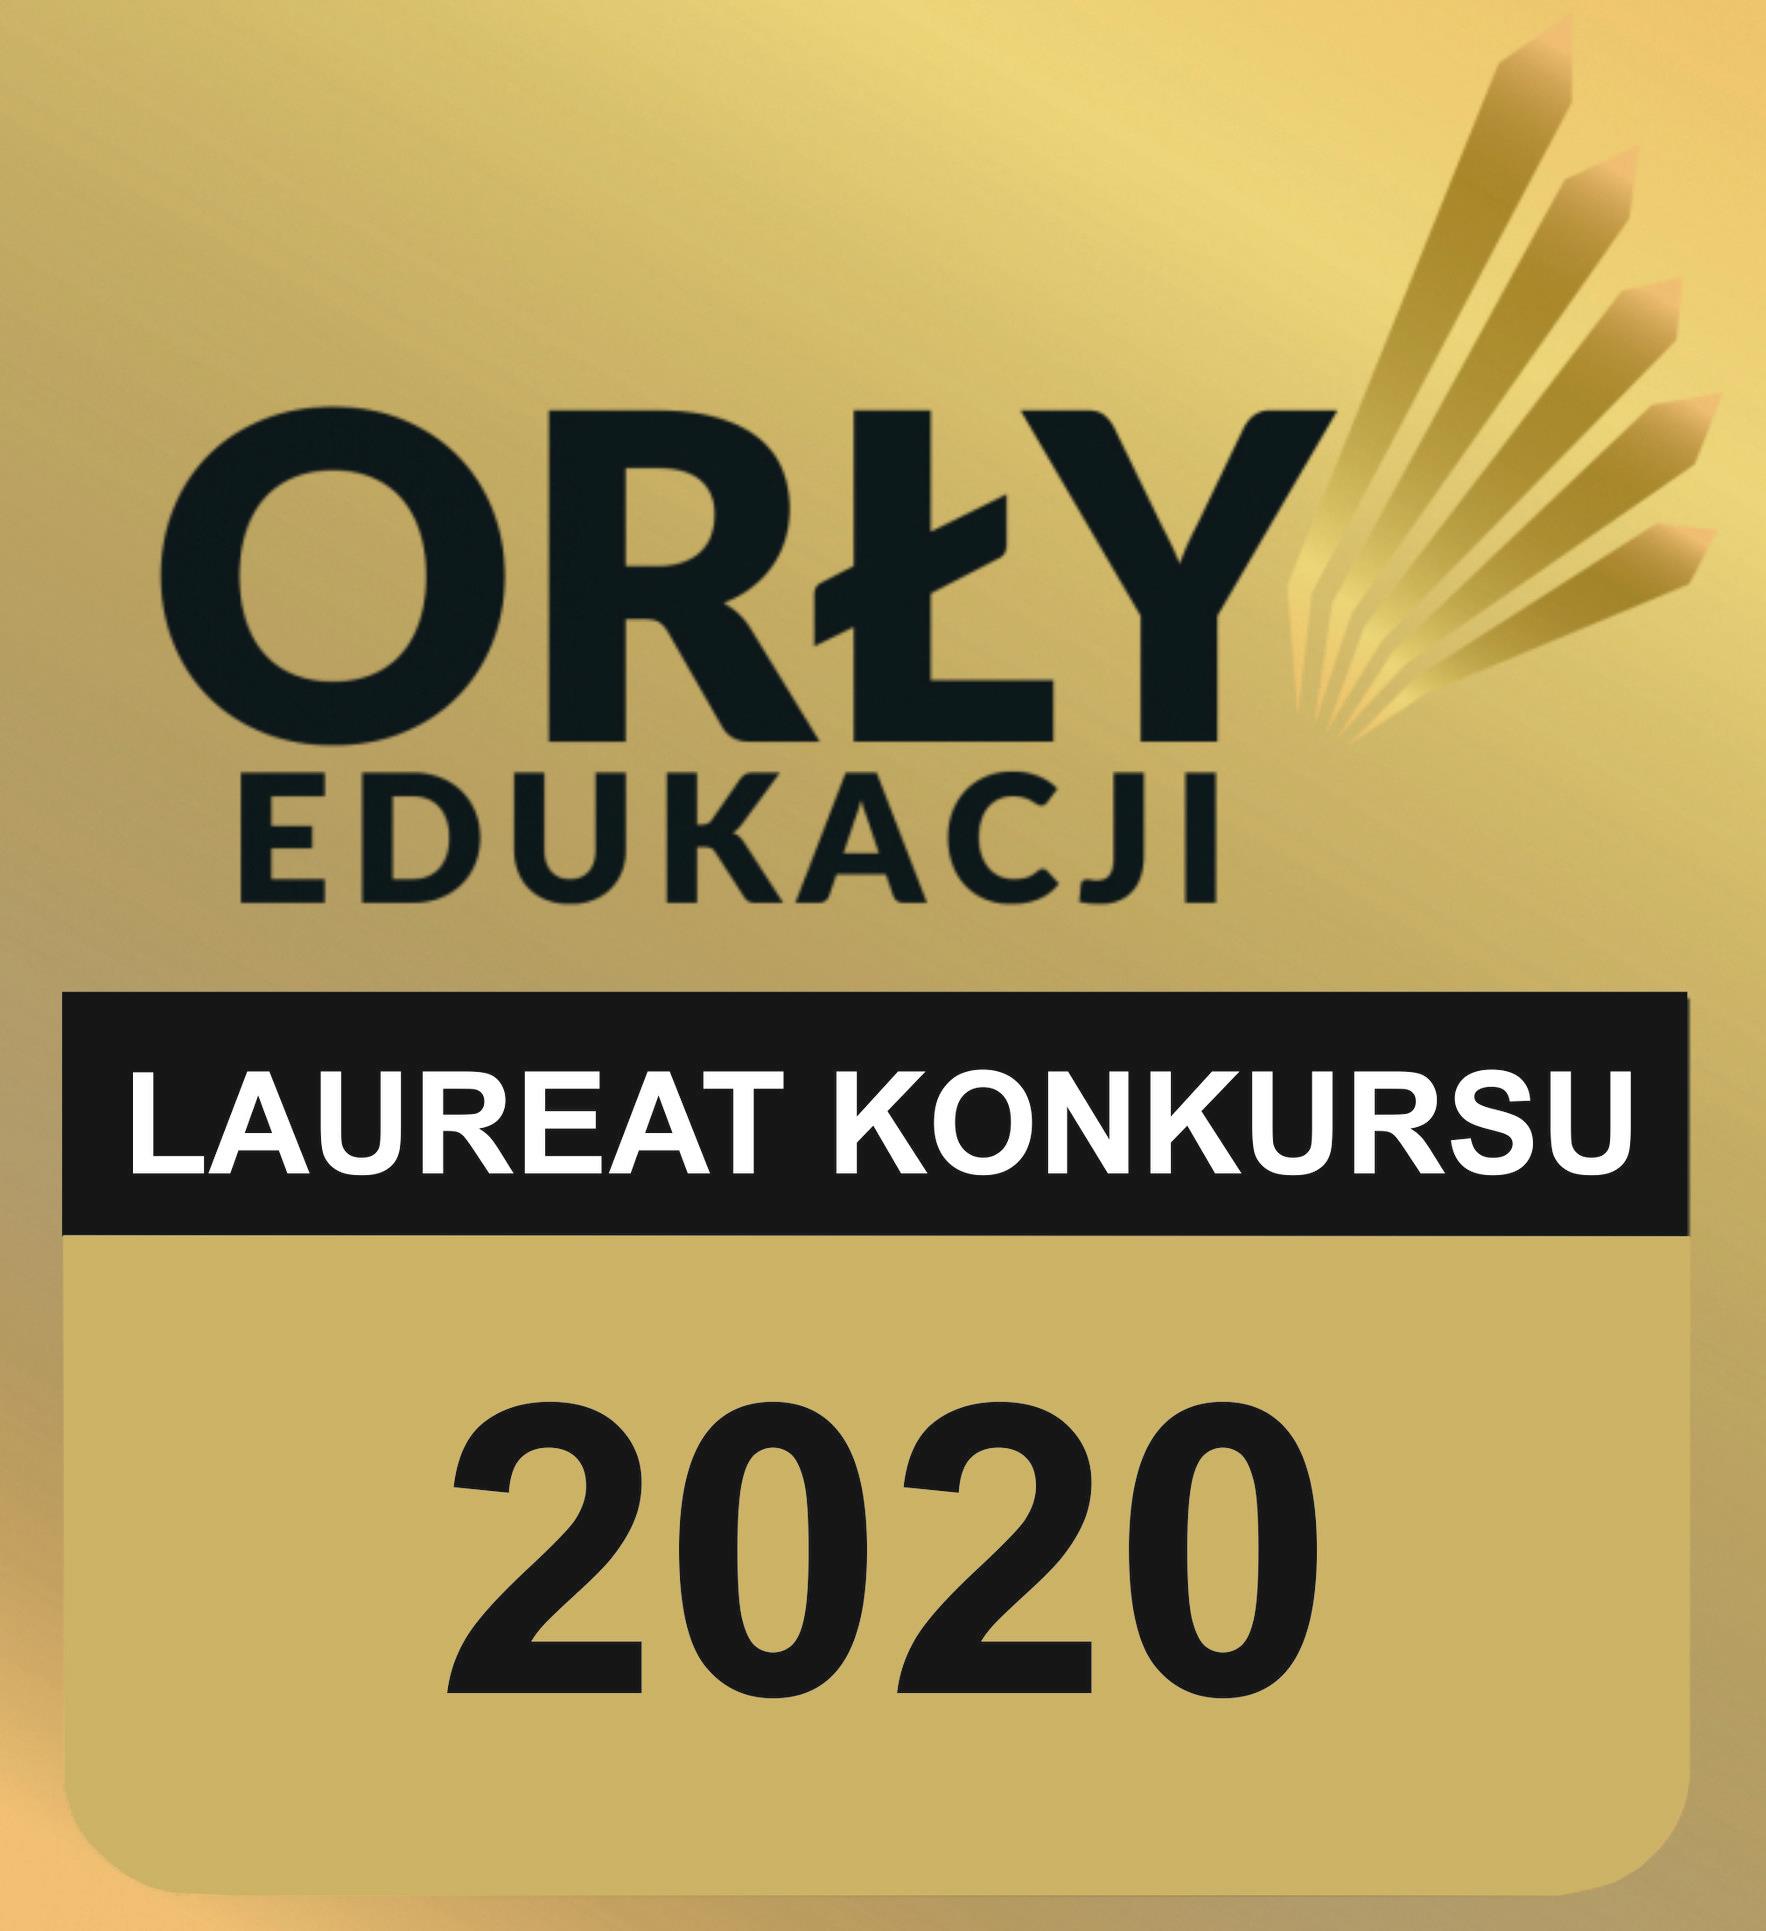 Uczelnia Państwowa w Sanoku laureatem konkursu ORŁY EDUKACJI 2020